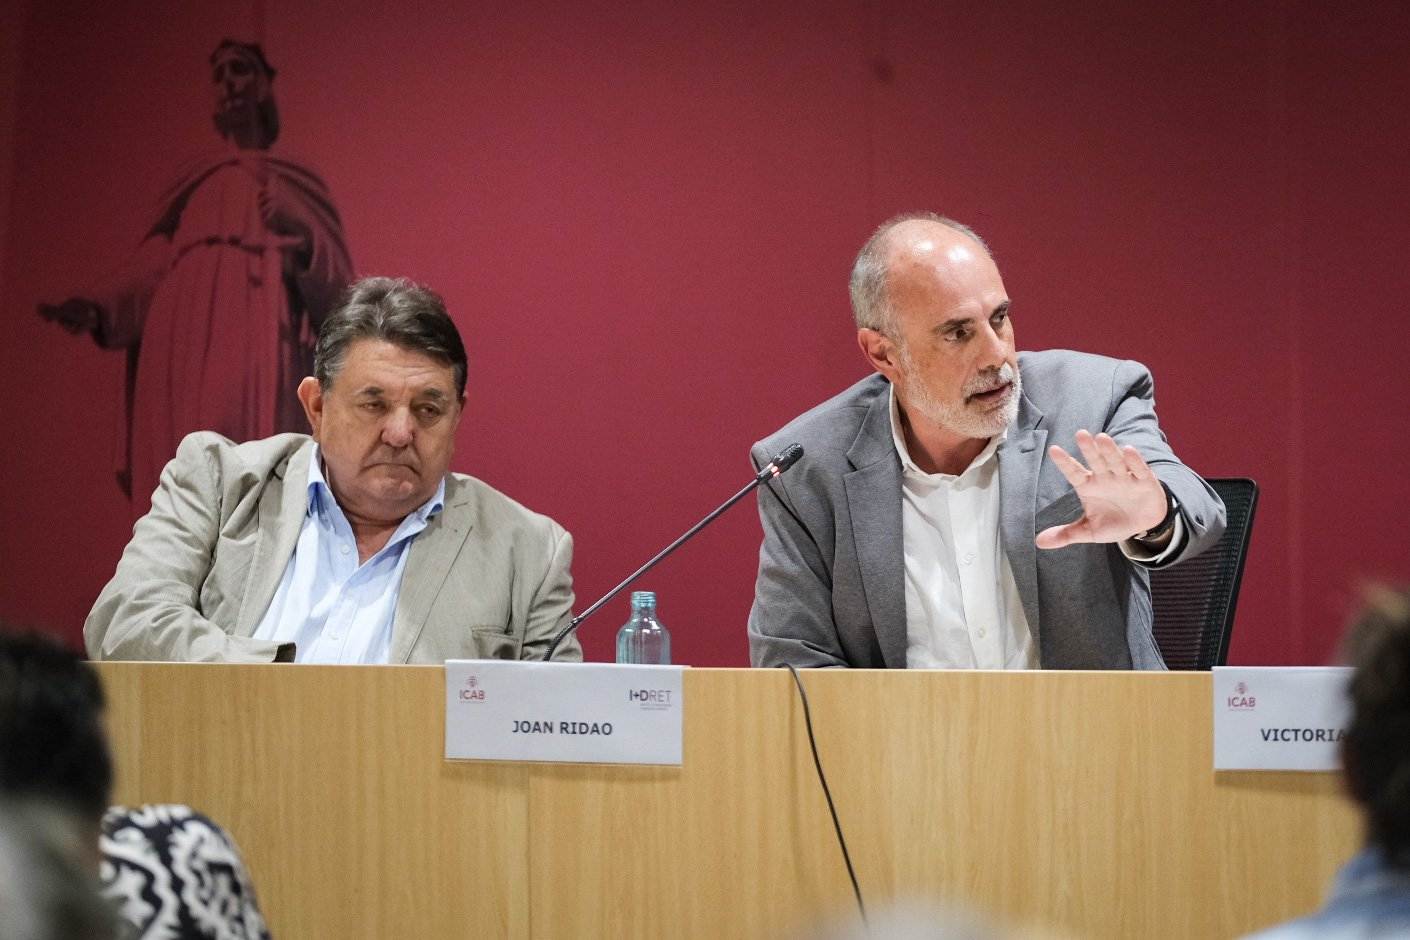 Gonzalo Quintero Olivares y Joan Ridao en el debate. Foto: Carlos Baglietto